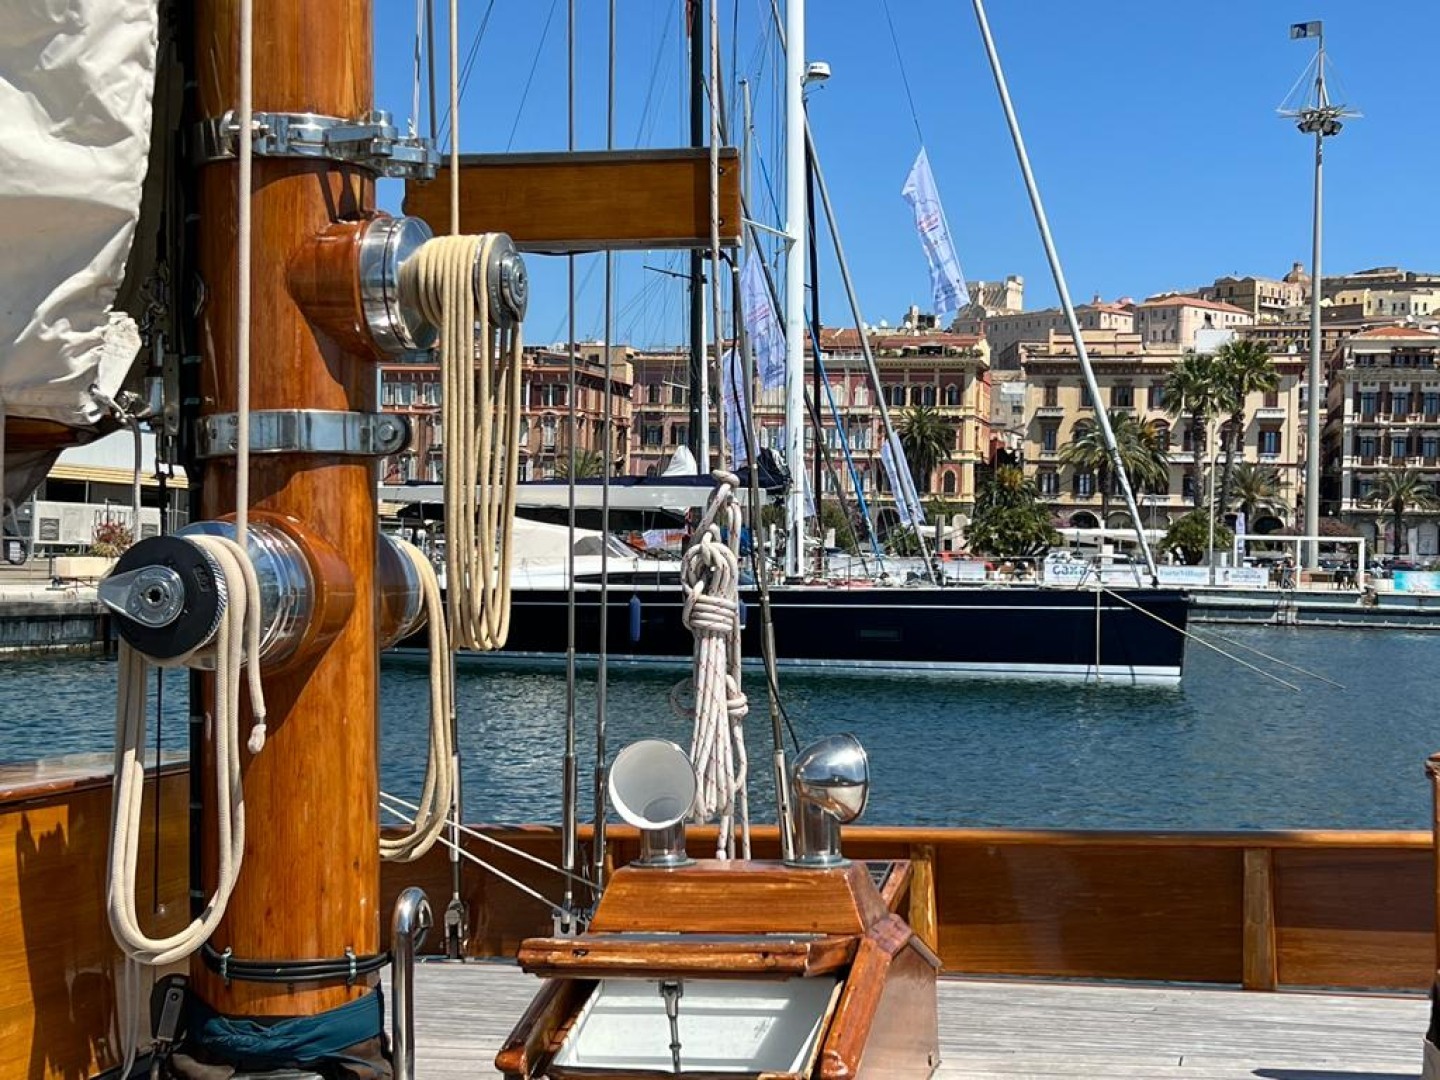 Domani via alla regata internazionale Cagliari-Monaco